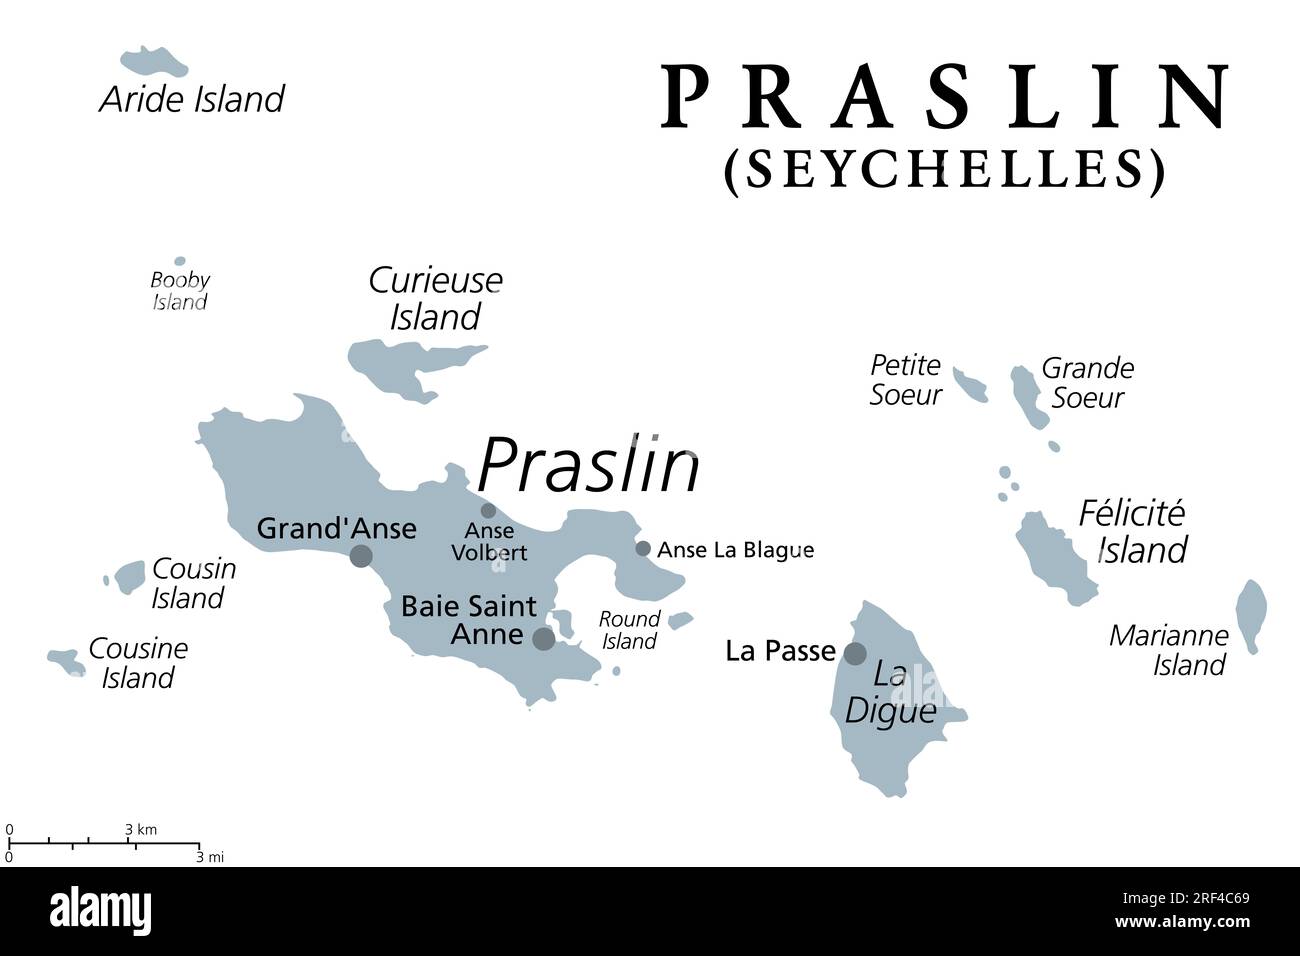 Praslin et les îles voisines, carte politique grise. Deuxième plus grande île des Seychelles, une République et un état archipélagique dans l'océan Indien. Banque D'Images